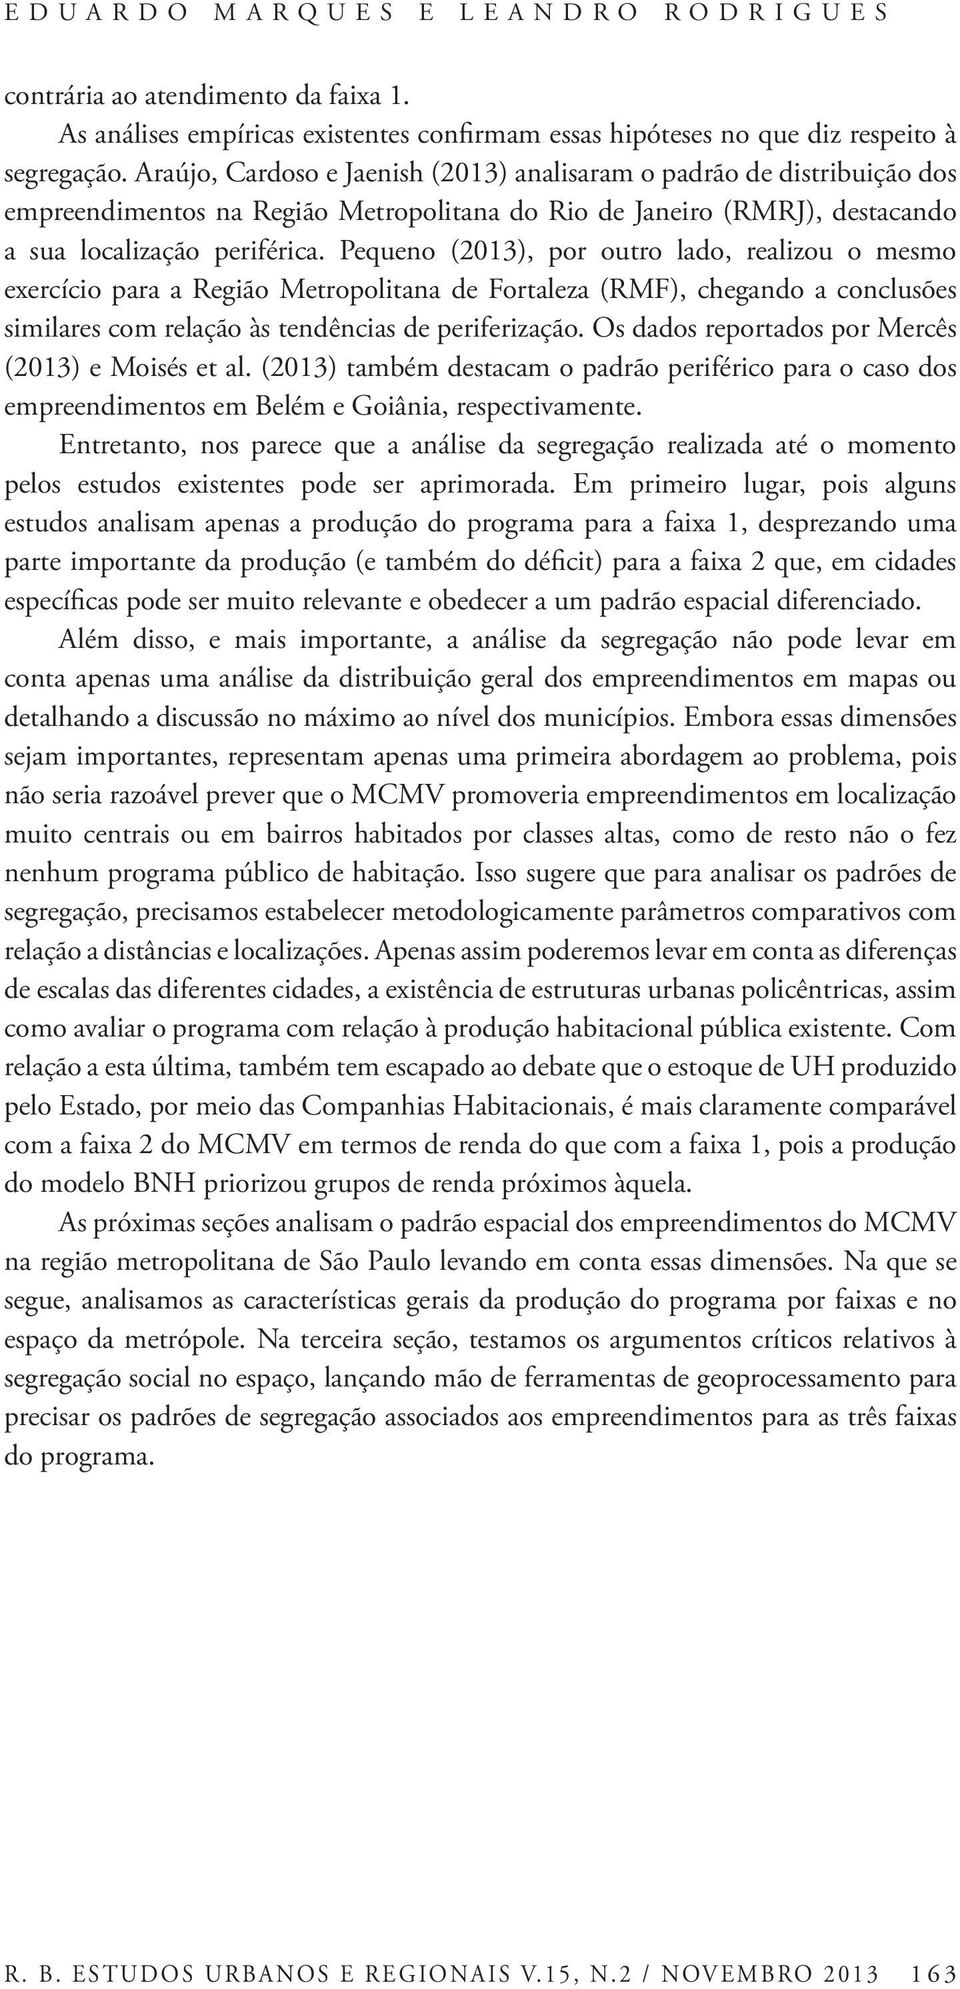 Pequeno (2013), por outro lado, realizou o mesmo exercício para a Região Metropolitana de Fortaleza (RMF), chegando a conclusões similares com relação às tendências de periferização.